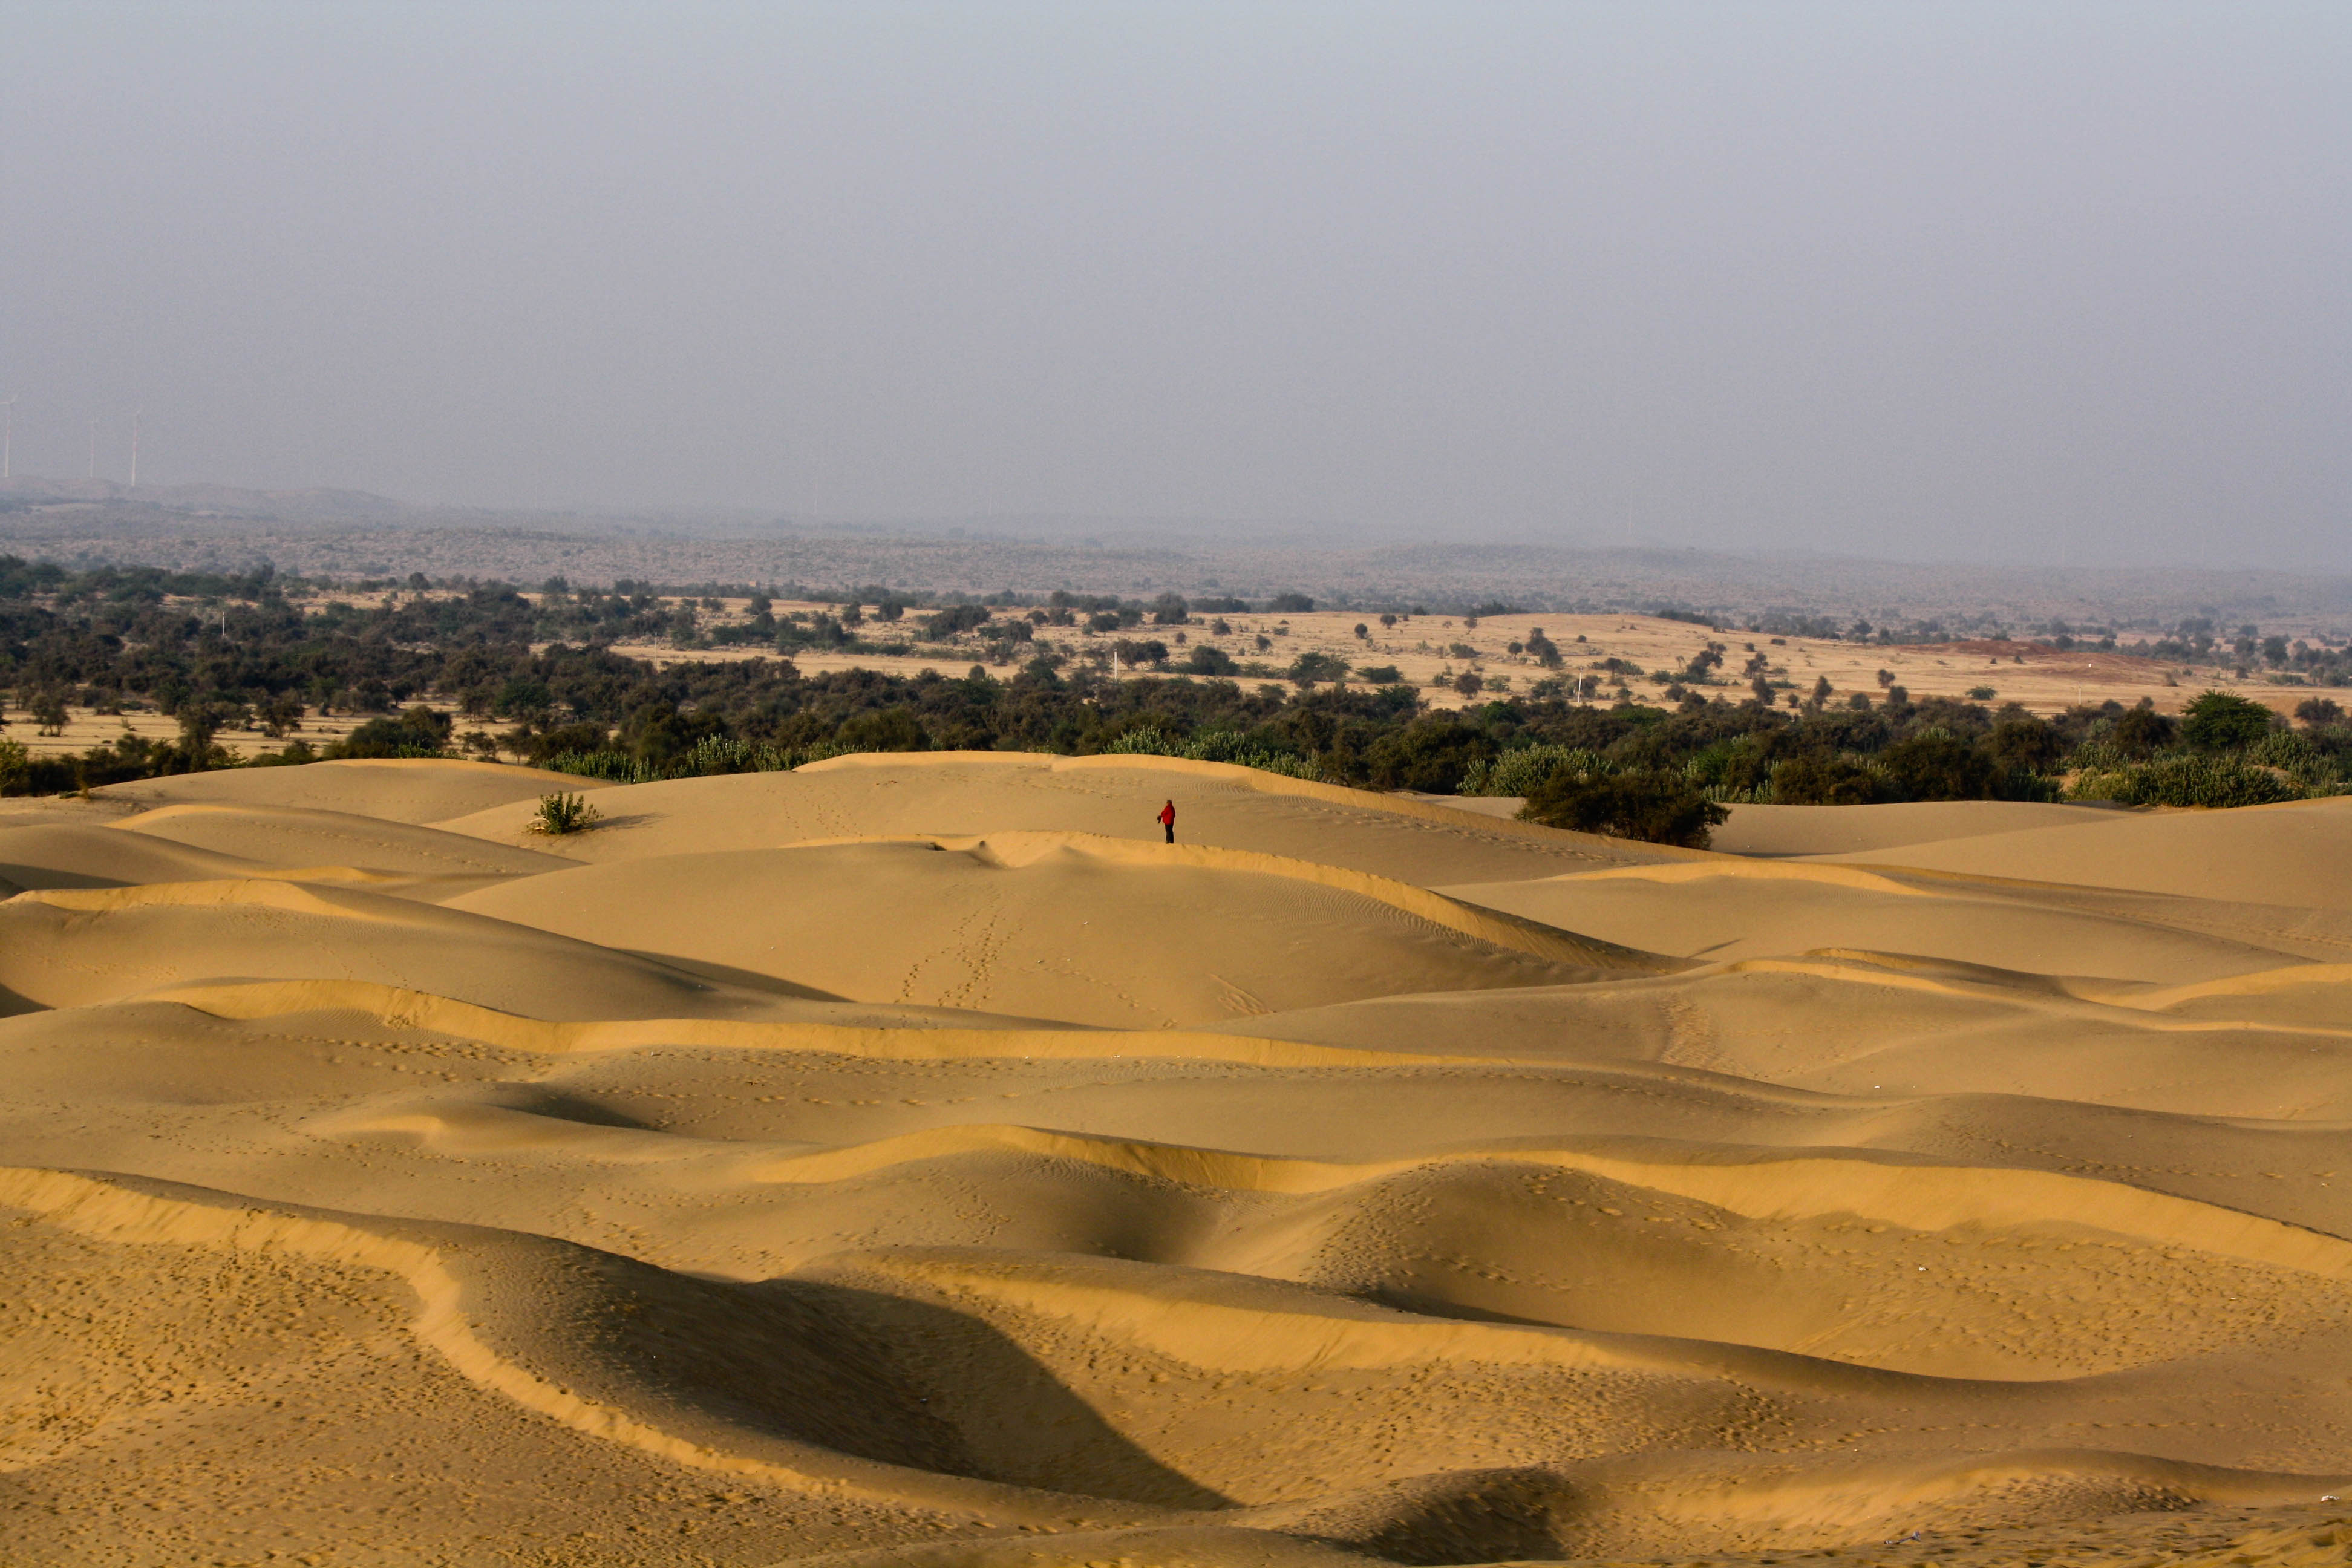 Thar_desert_Rajasthan_India.jpg